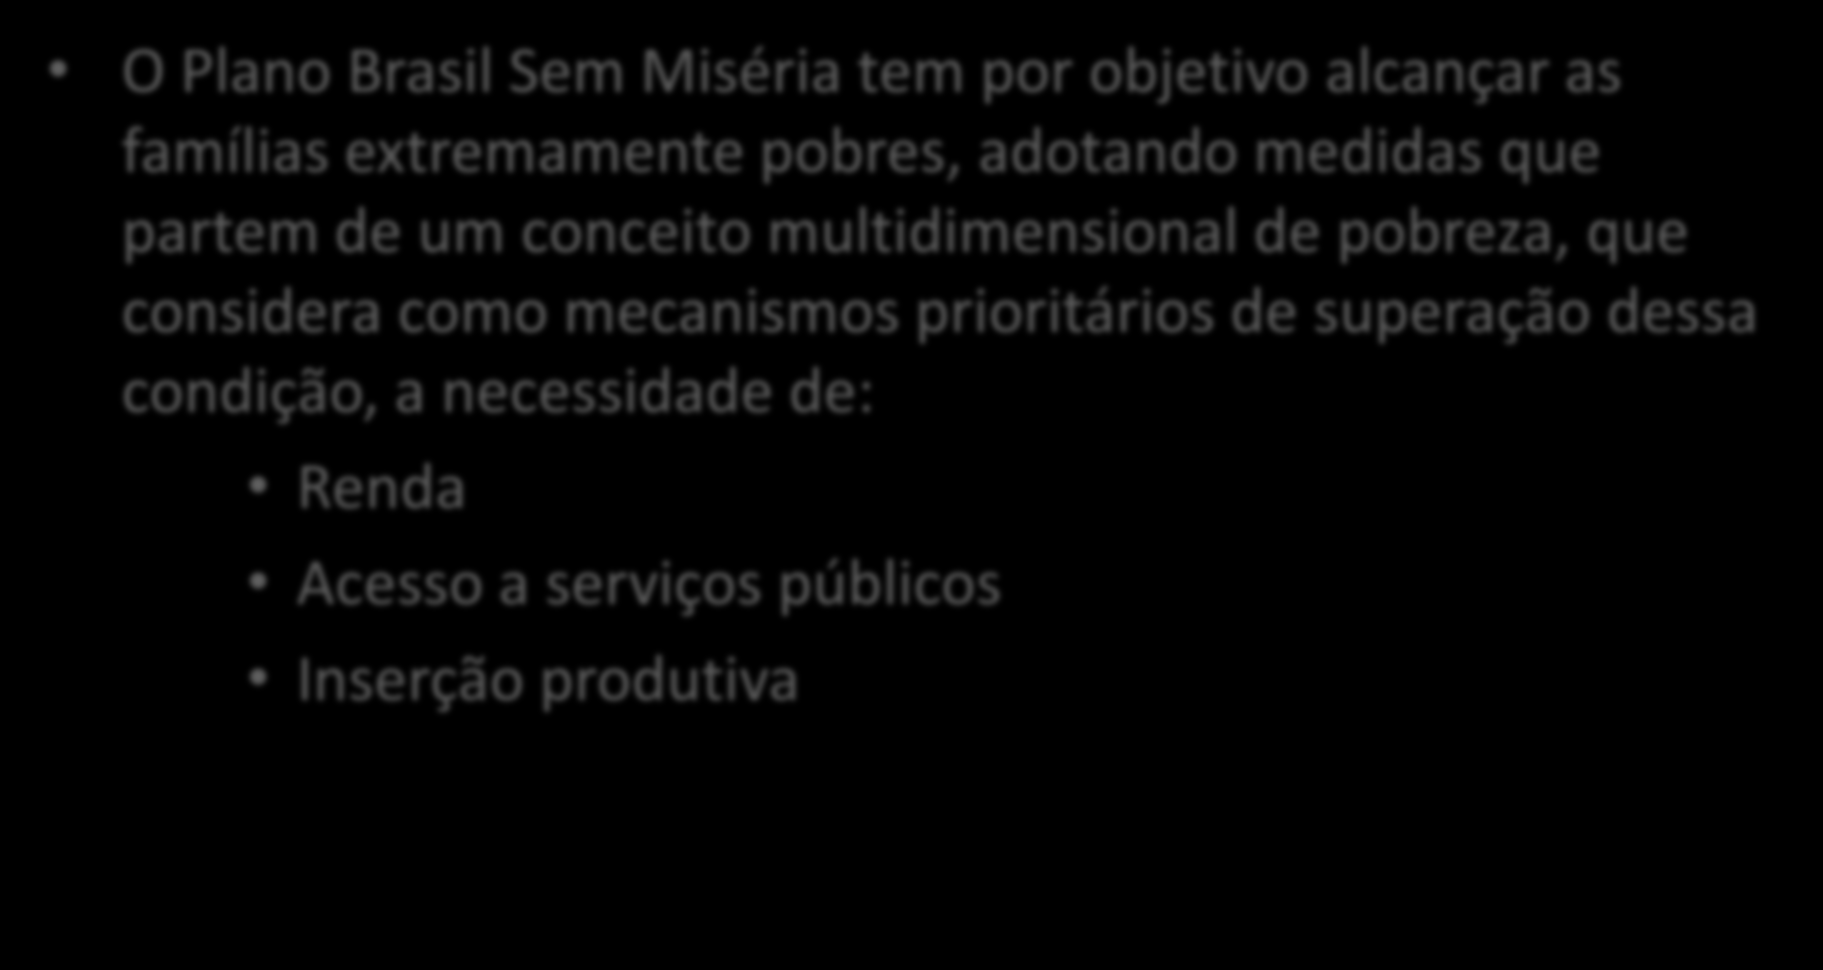 O BSM como estratégia de superação da pobreza O Plano Brasil Sem Miséria tem por objetivo alcançar as famílias extremamente pobres, adotando medidas que partem de um